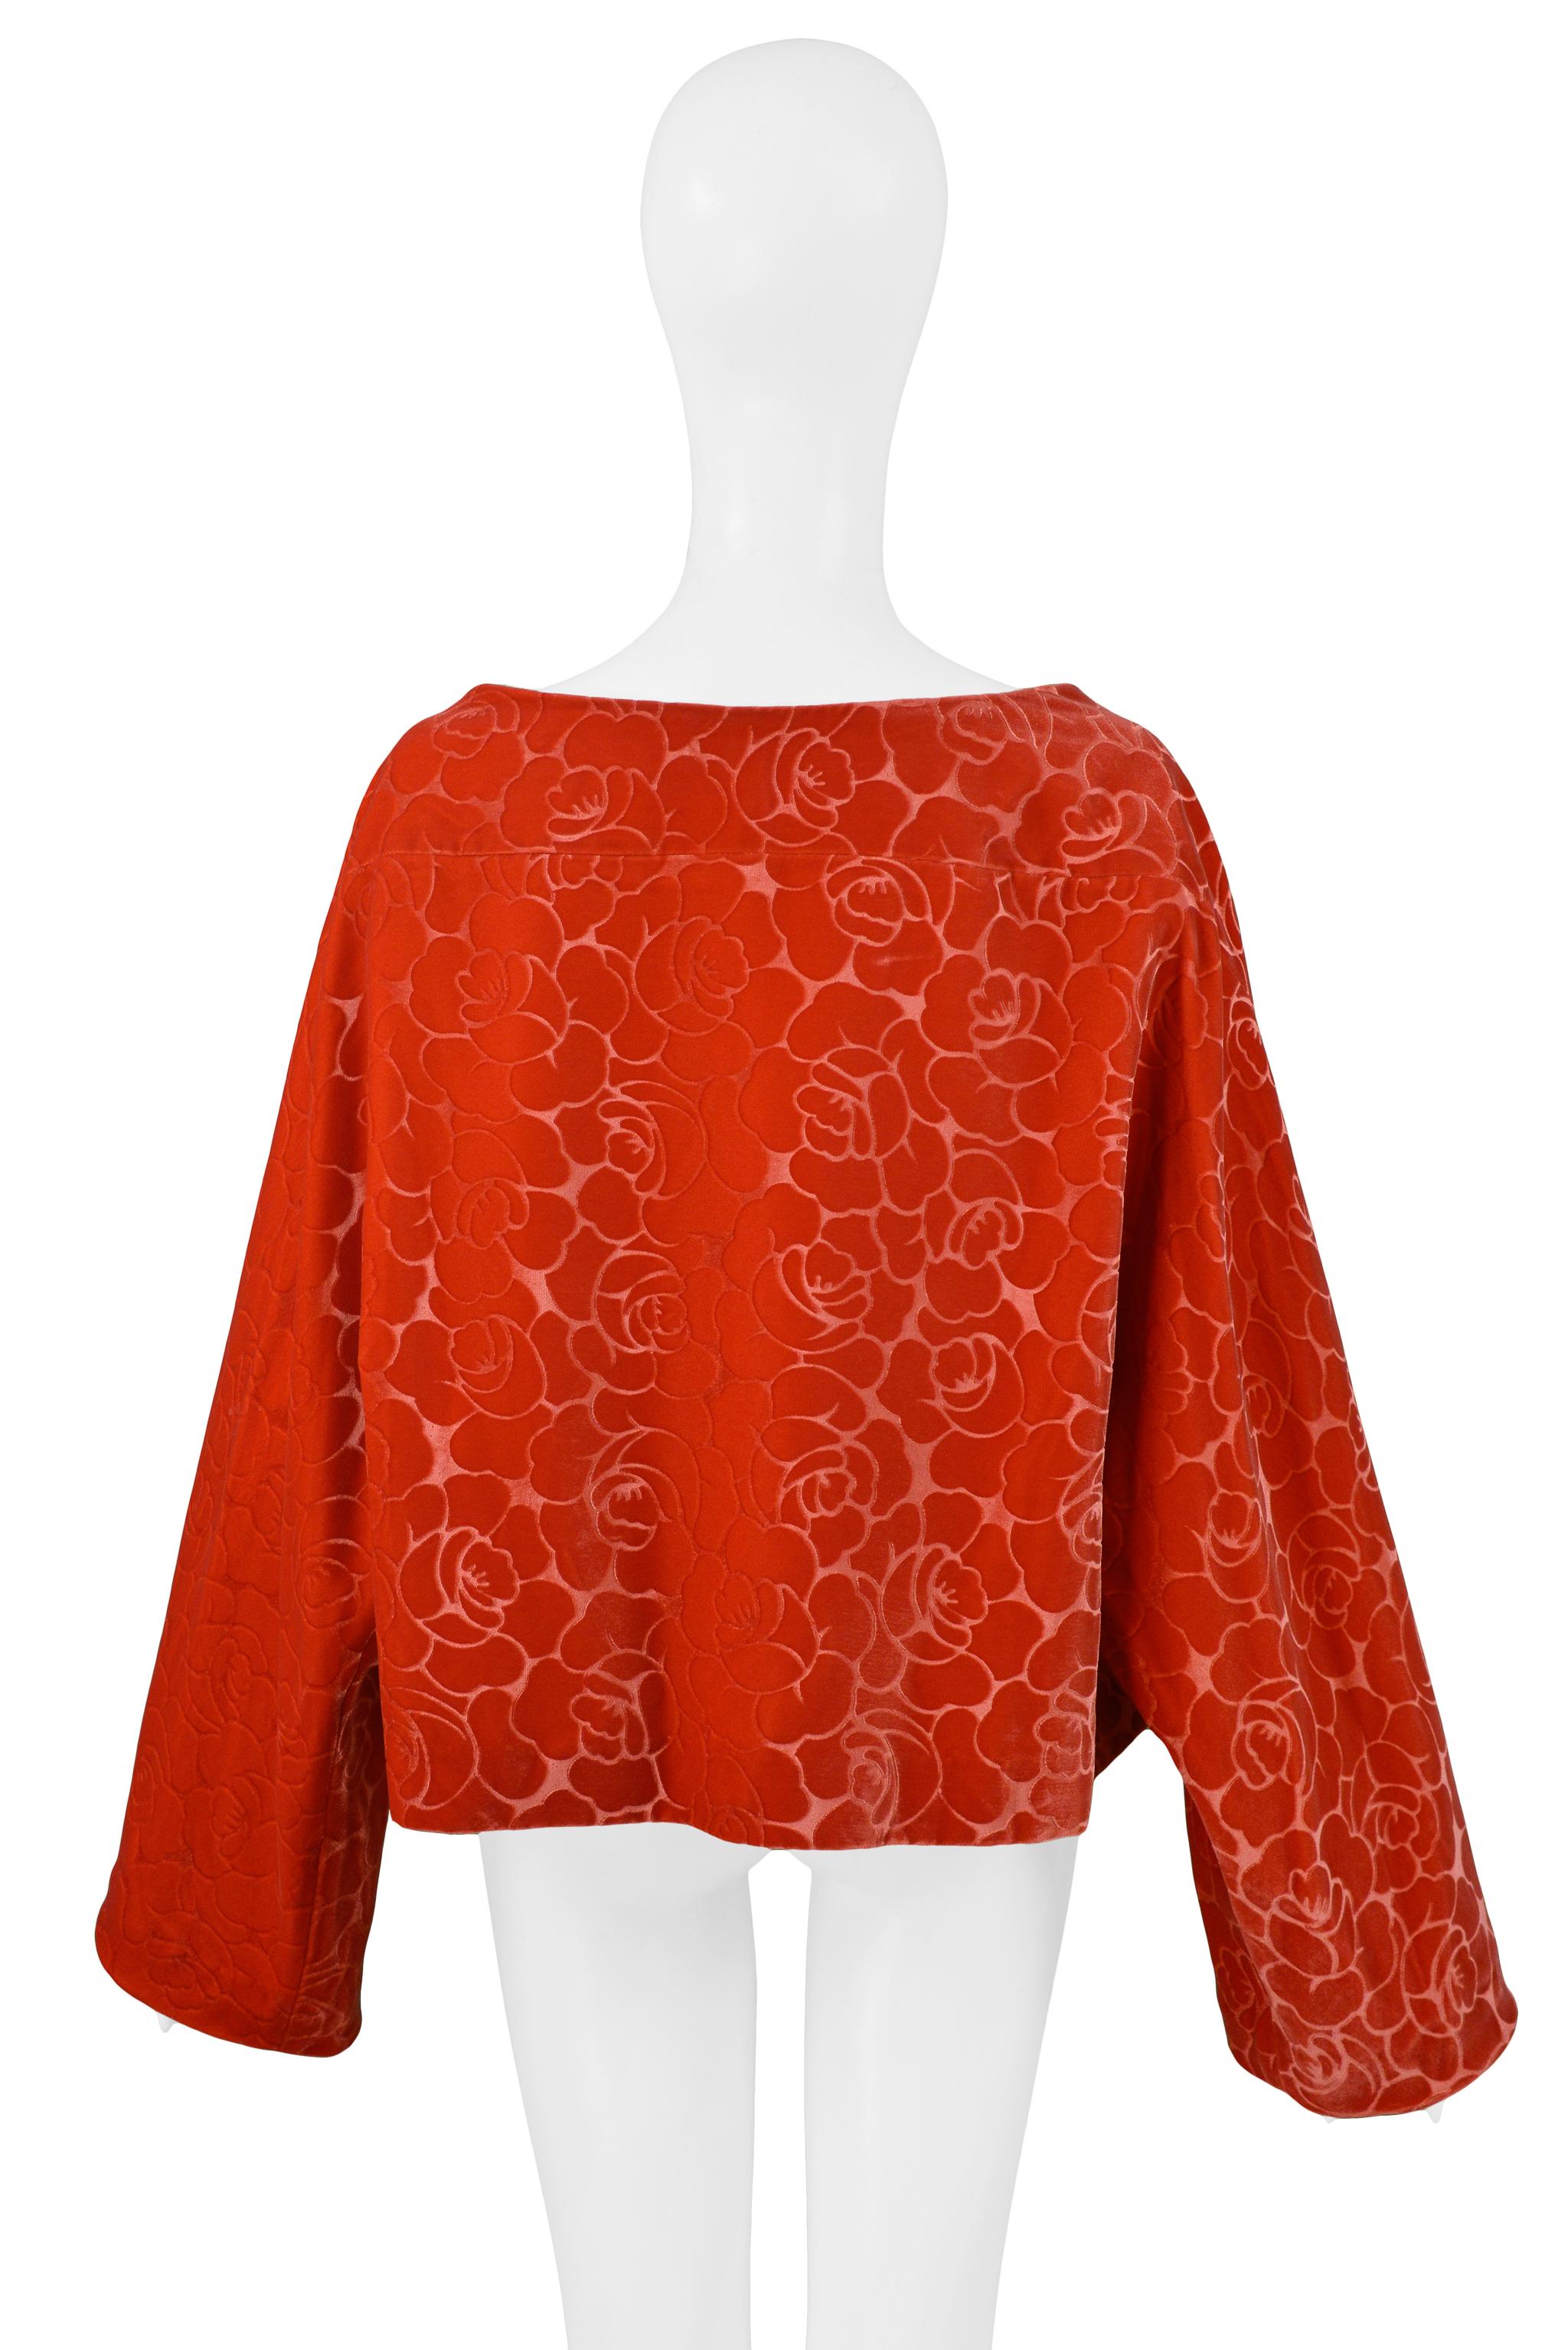 Comme Des Garcons Orange Red Floral Velvet Jacket 1996 1